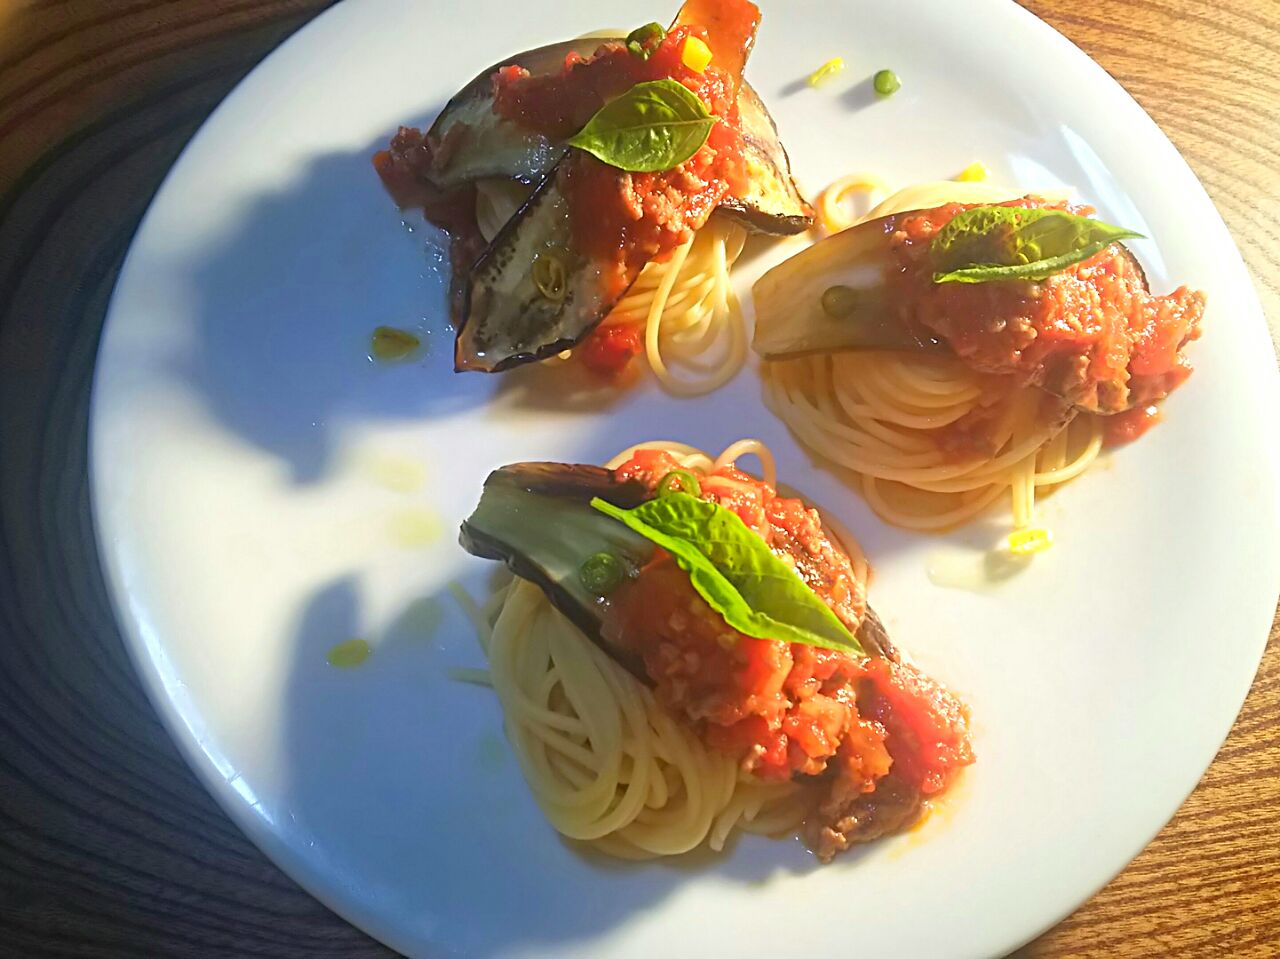 Spaghetti alla bolognese e melanzane
ボローニャ風スパゲッティーに茄子